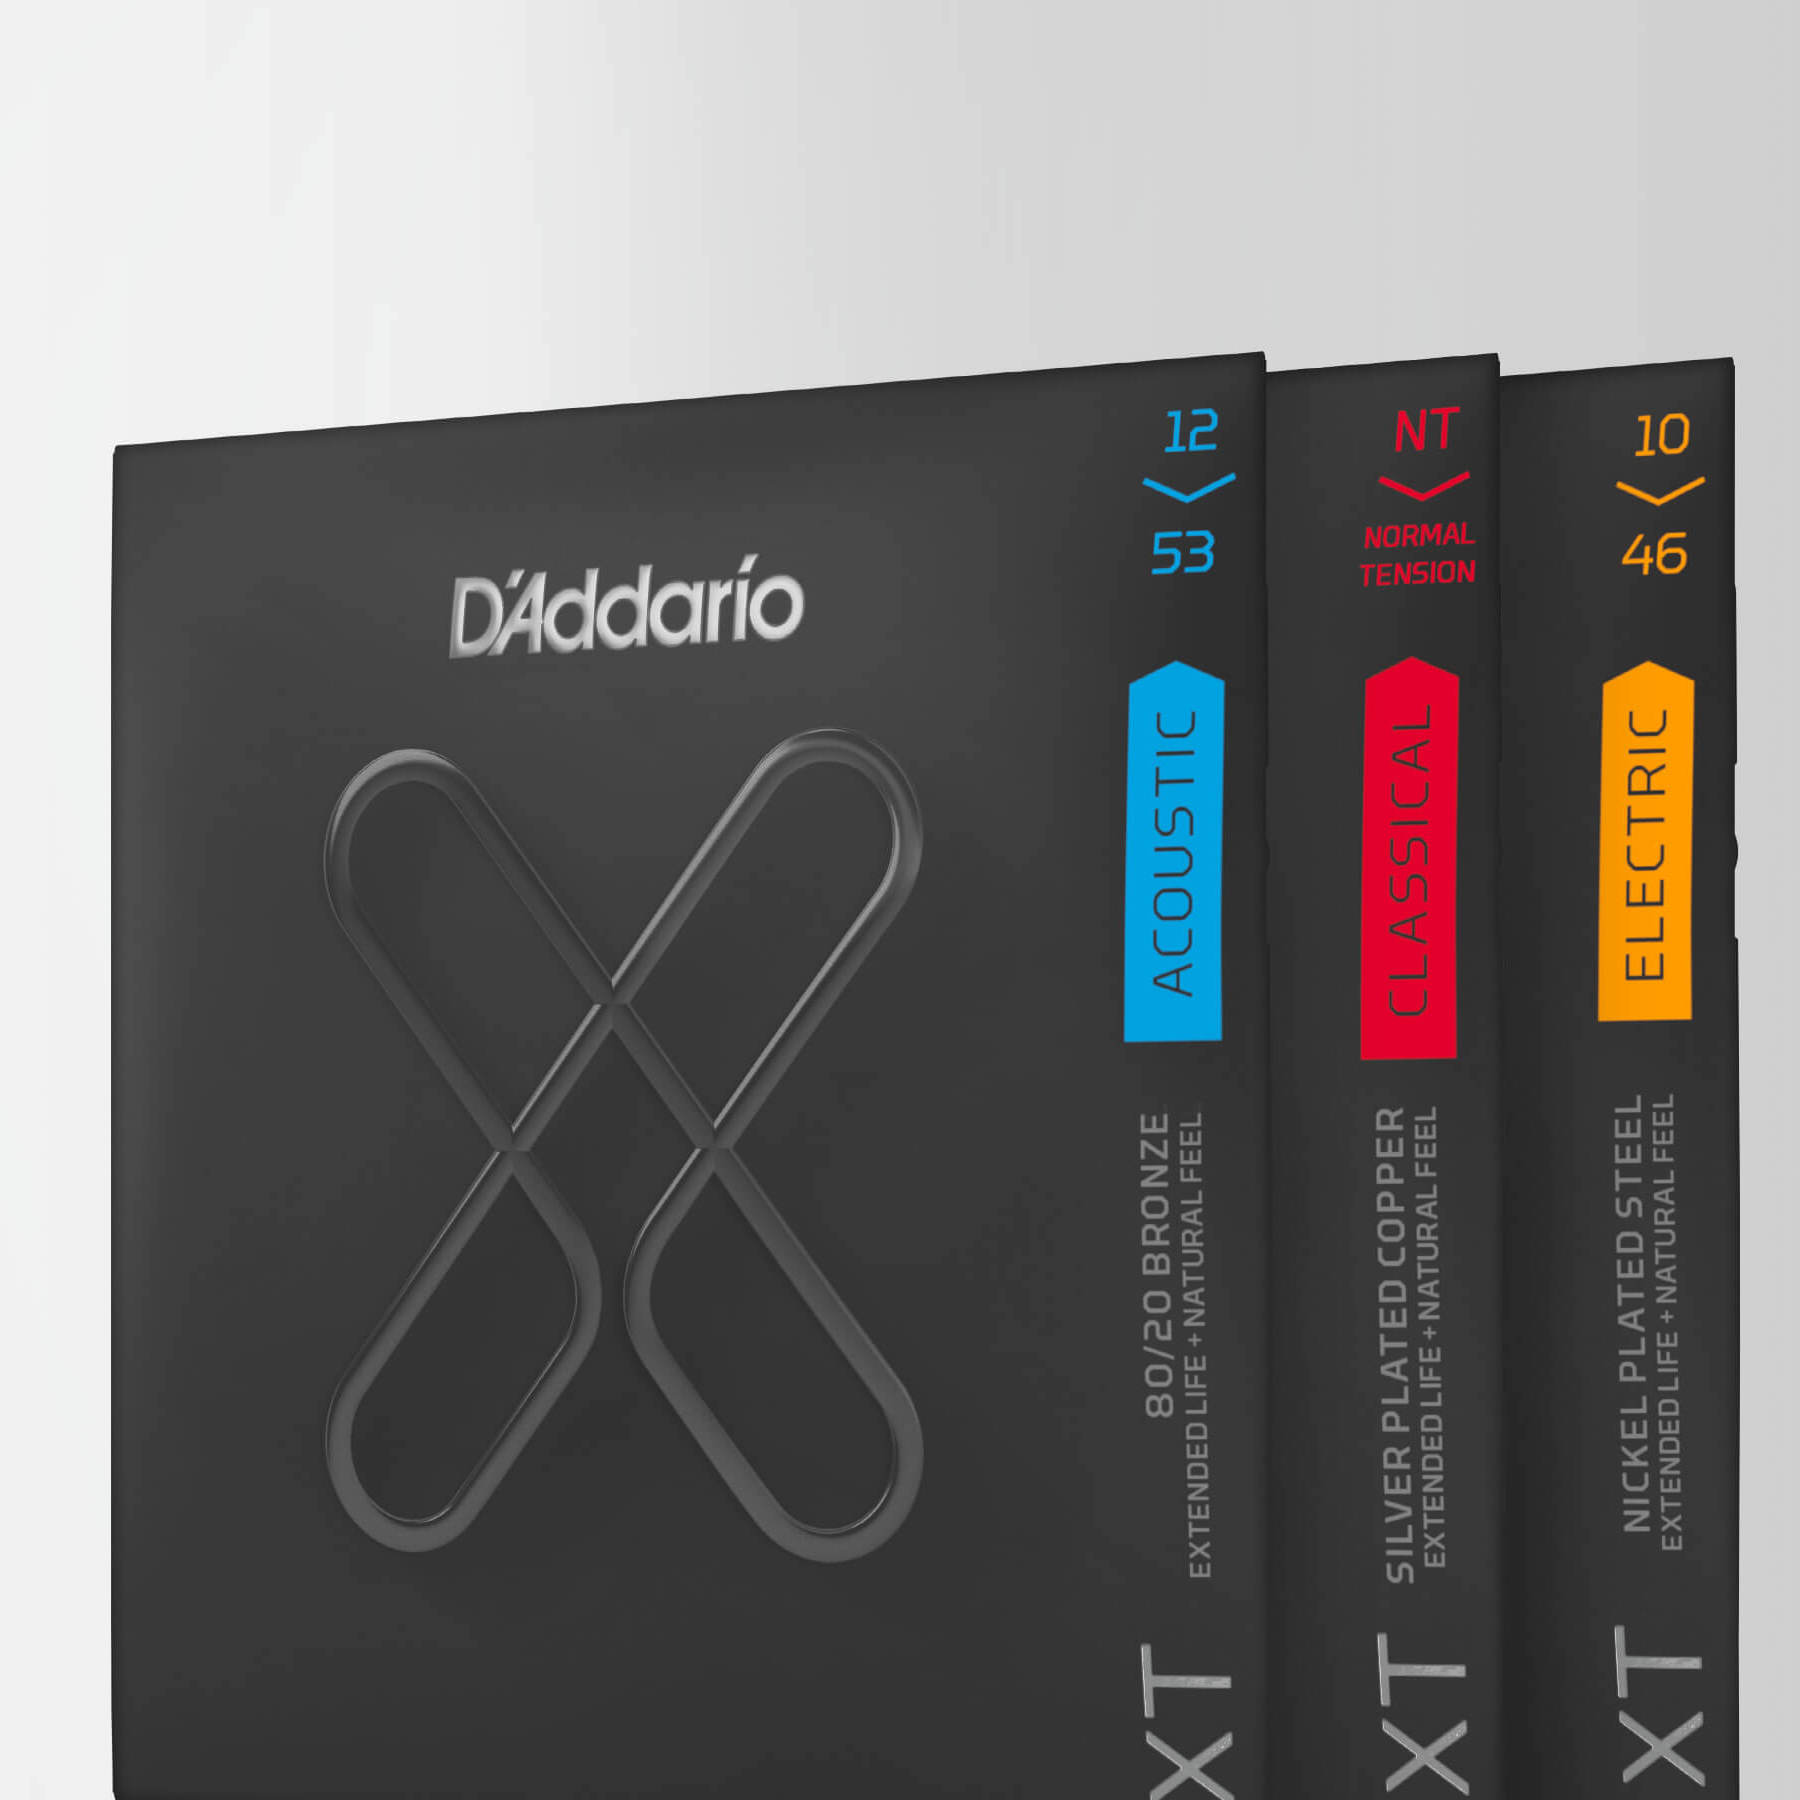 D'Addario XT - новые струны с покрытием